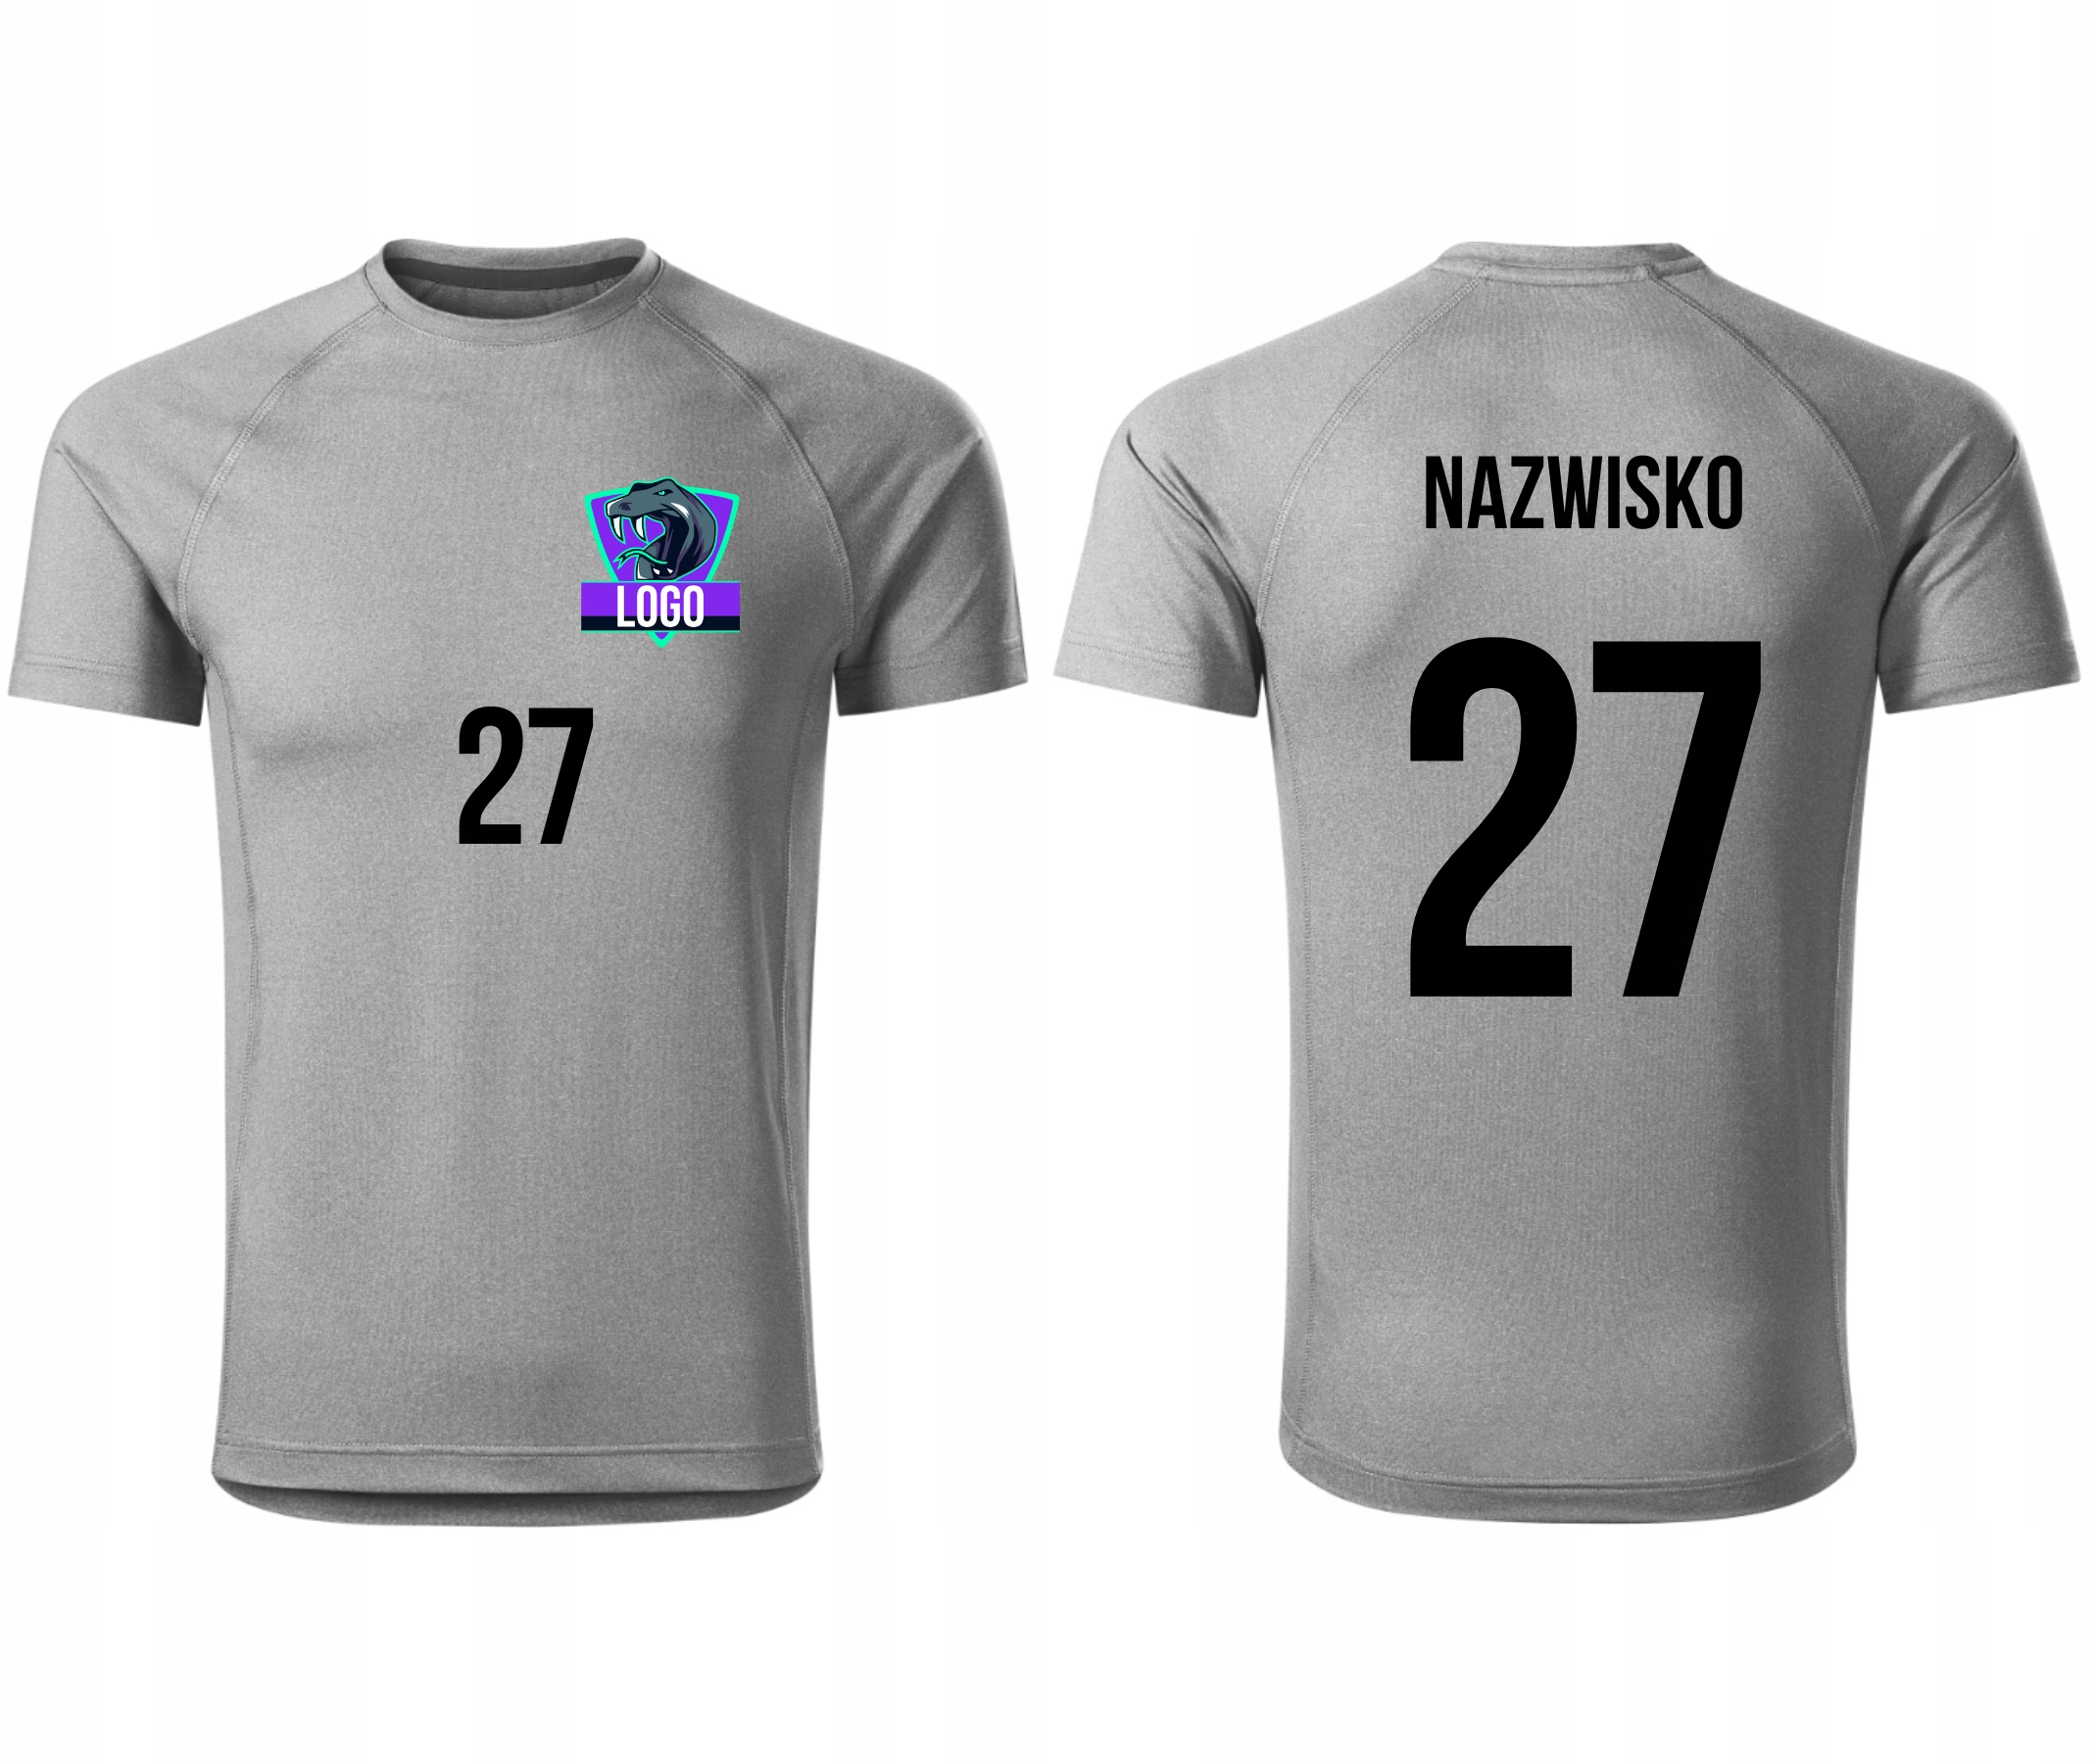 Športové tričko Malfini s vaším logom - Potlač